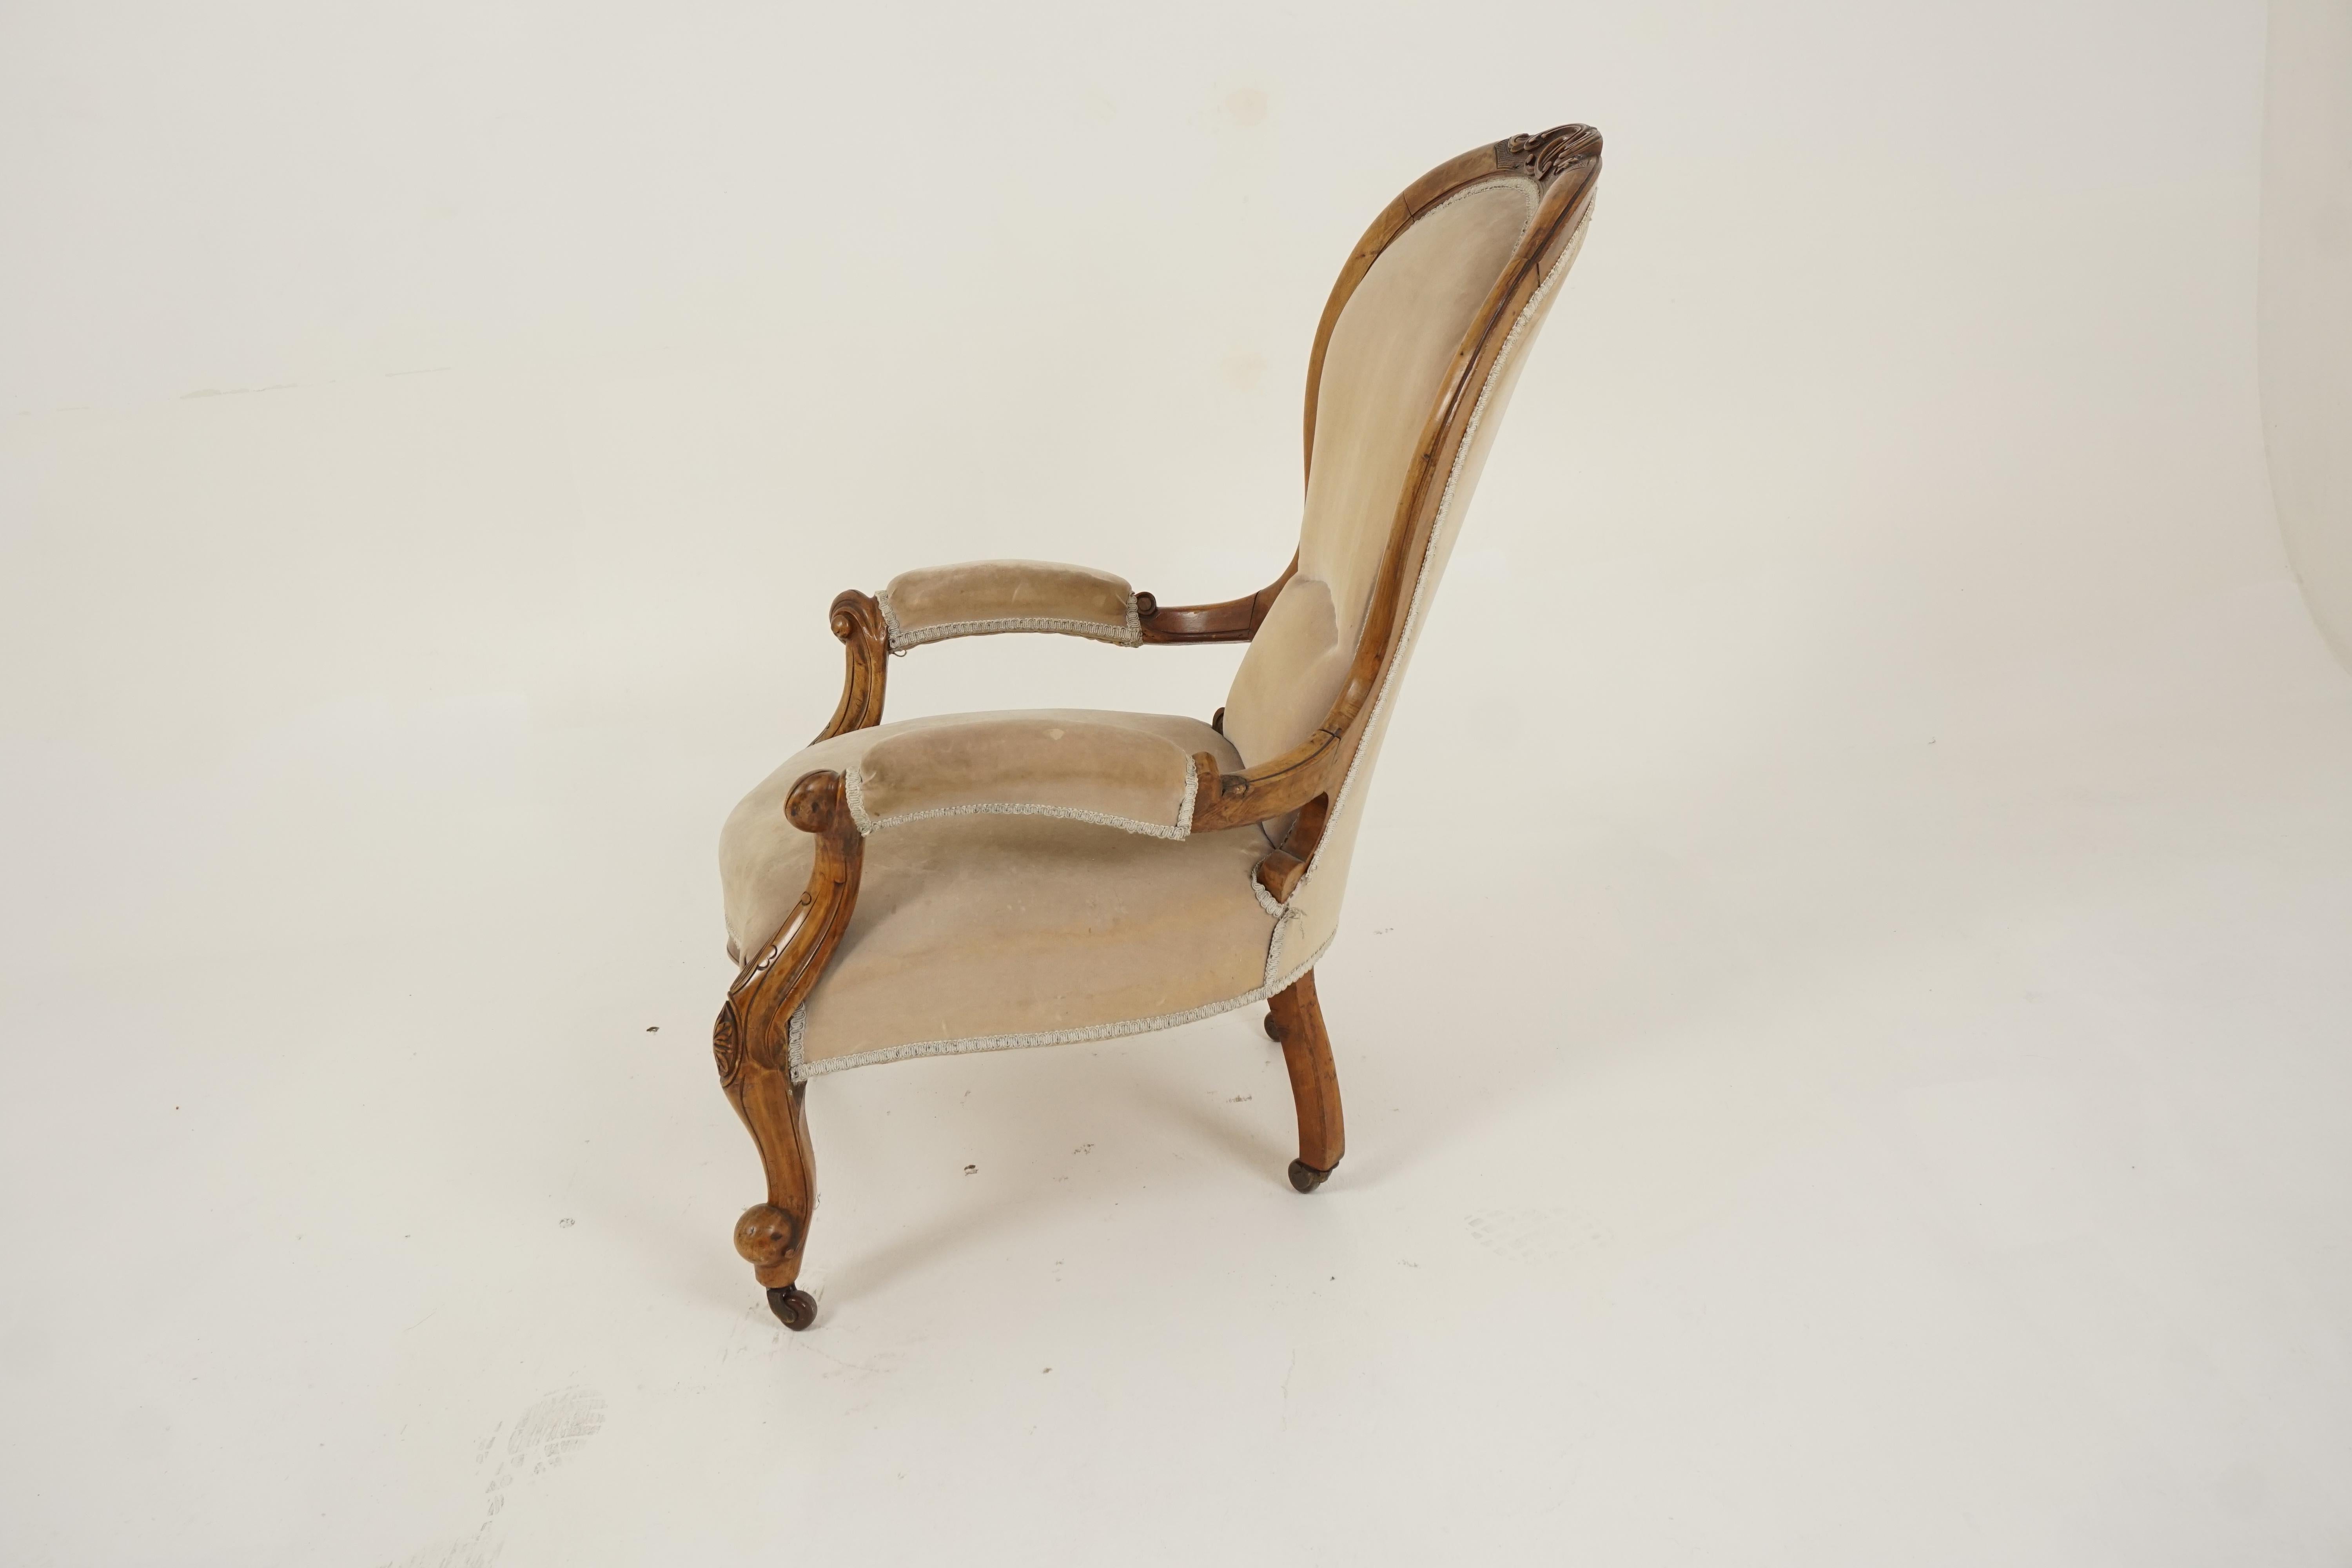 Hand-Crafted Antique Victorian Chair, Walnut, Gentlemen's Parlour Chair, Scotland 1870, H282